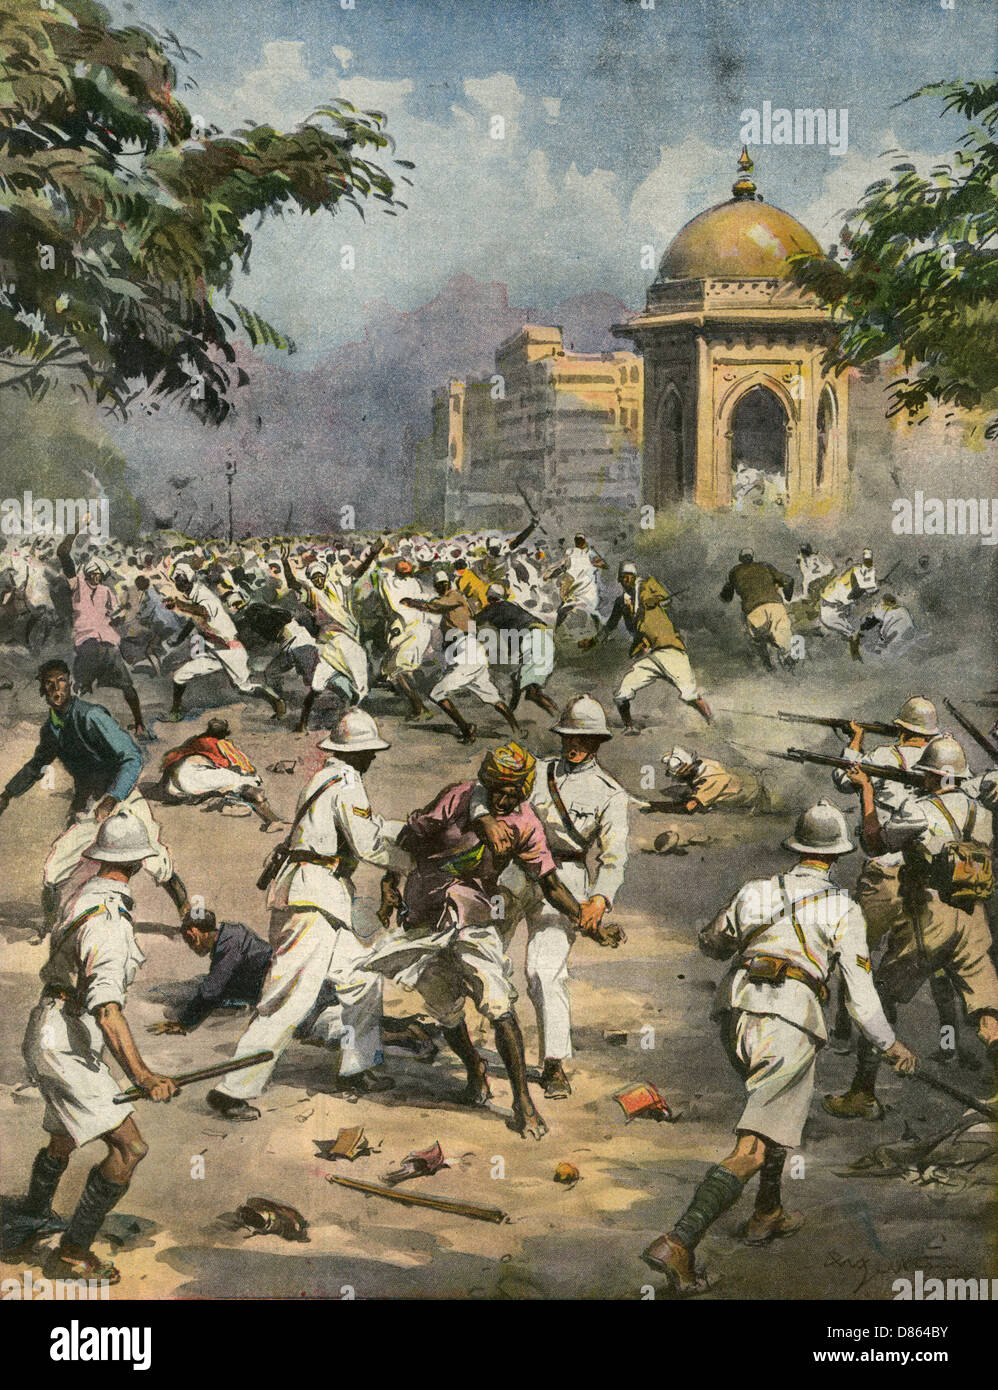 Nationalistes en Inde pendant la Seconde Guerre mondiale Banque D'Images